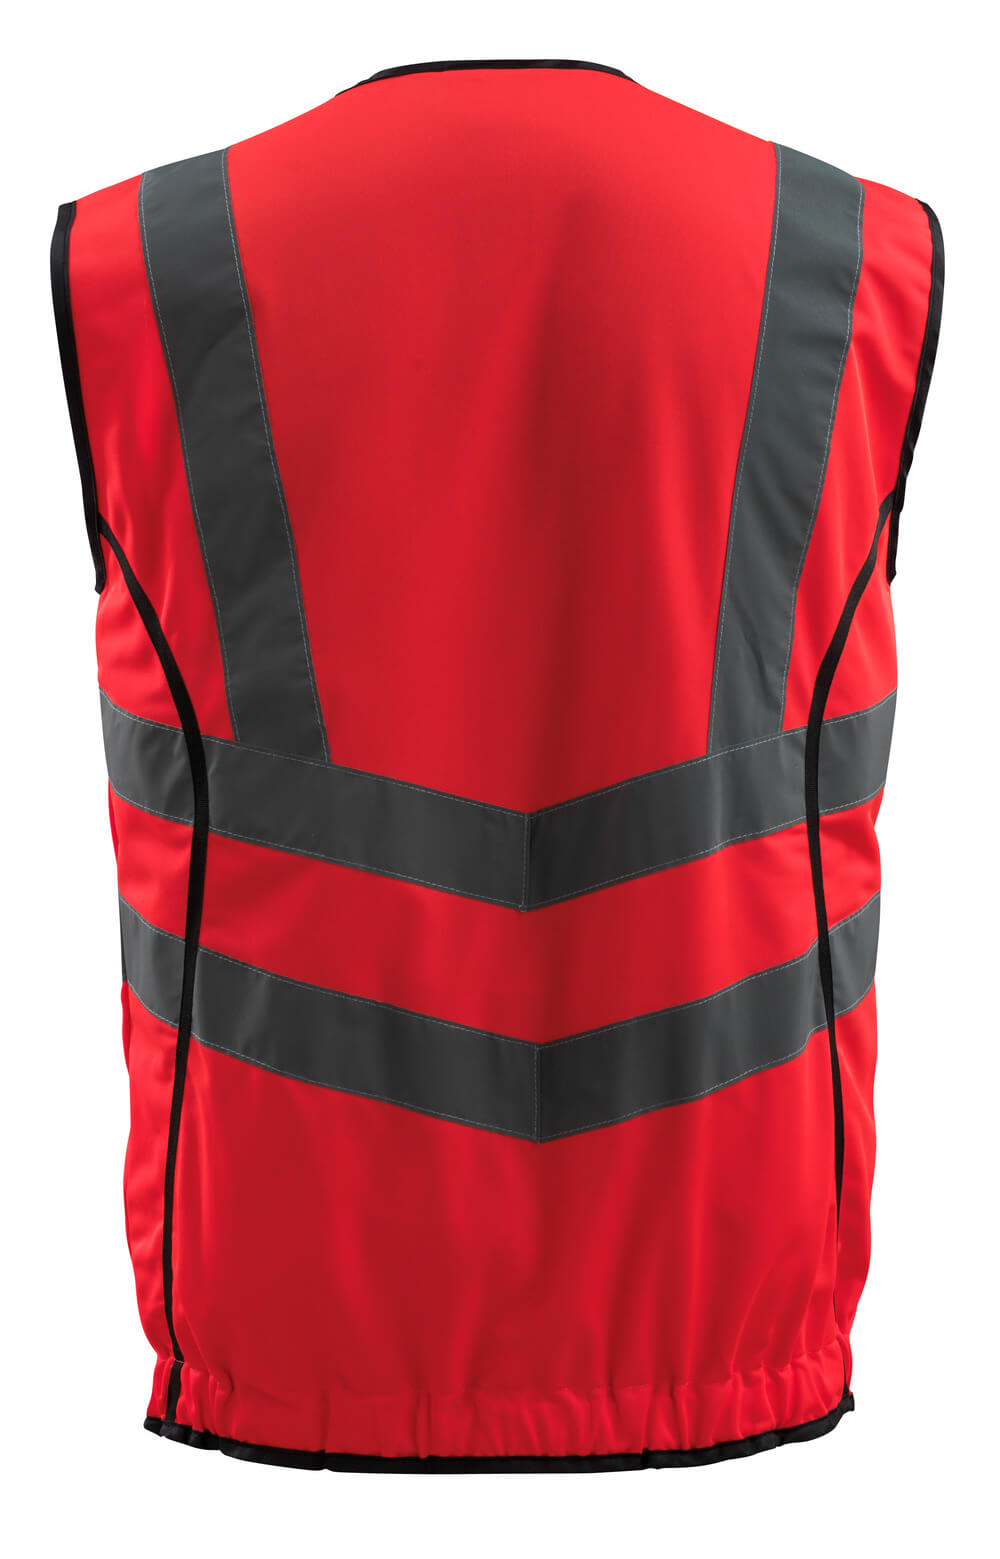 Mascot SAFE SUPREME  Wingate Traffic Vest 50145 hi-vis red